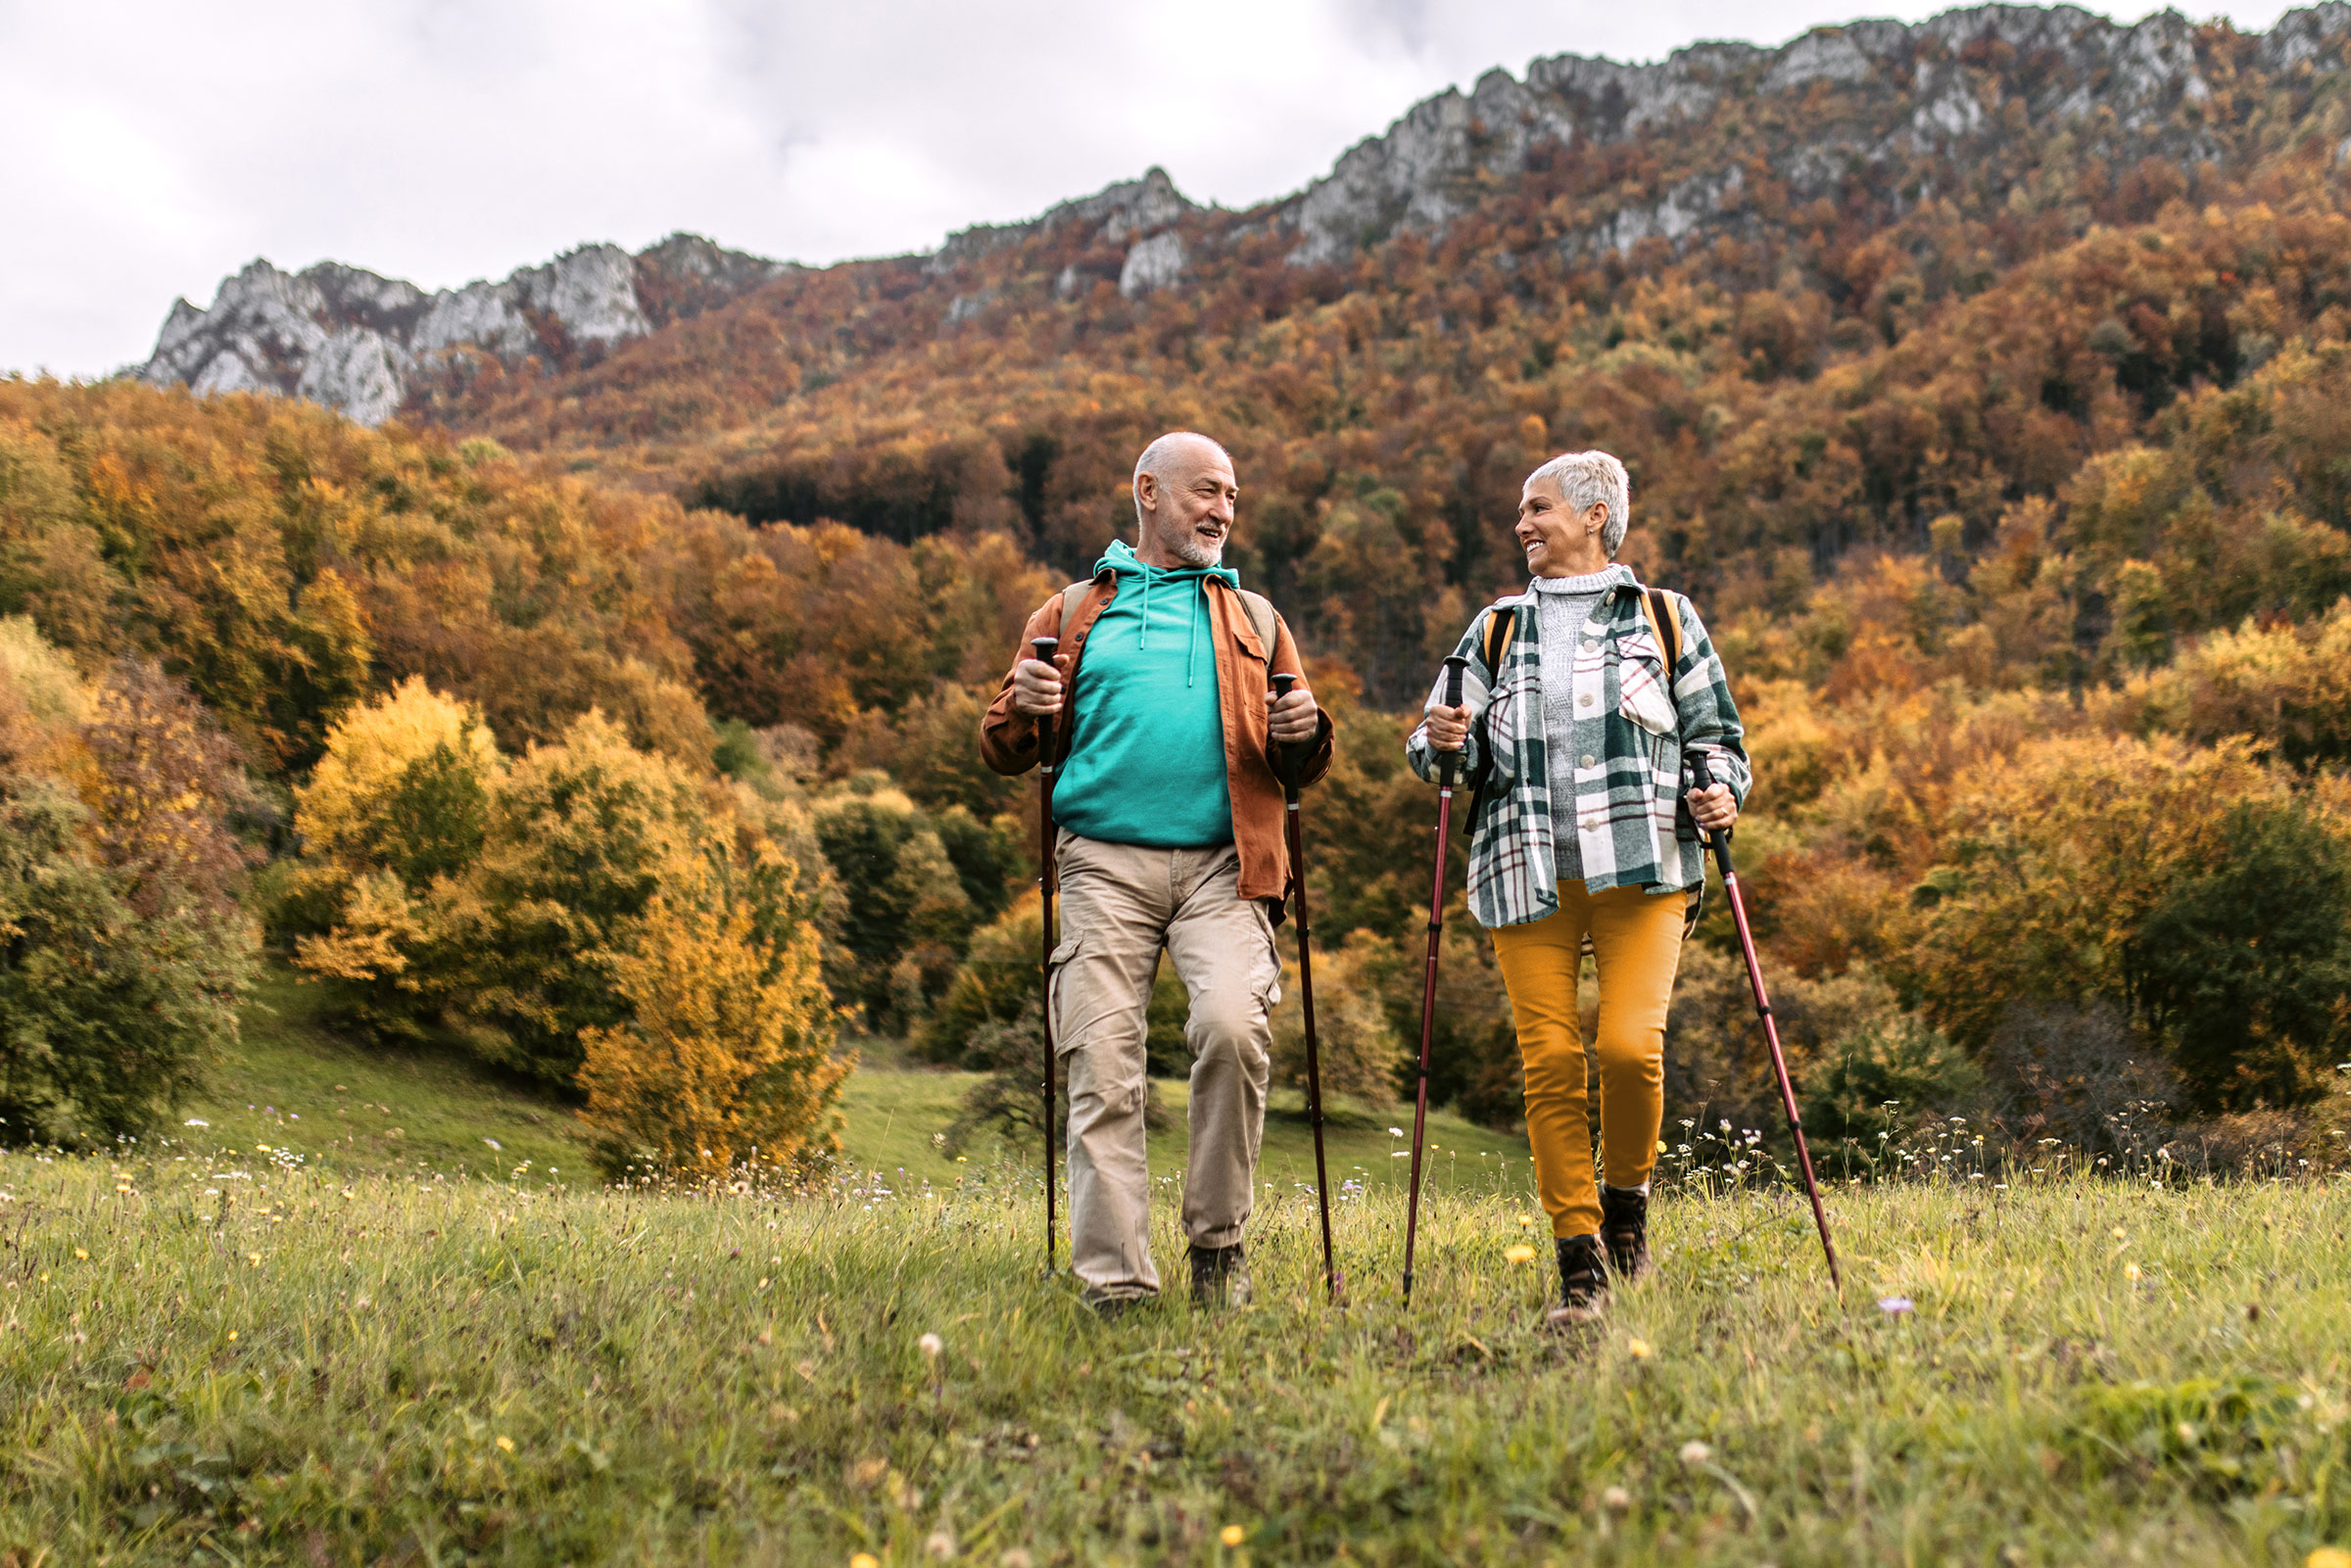 Couple de retraités faisant une randonnée avec des bâtons de marche dans un une colline. Derrière eux, on aperçoit une chaîne de montagnes et des arbres couverts de feuilles d'automne.